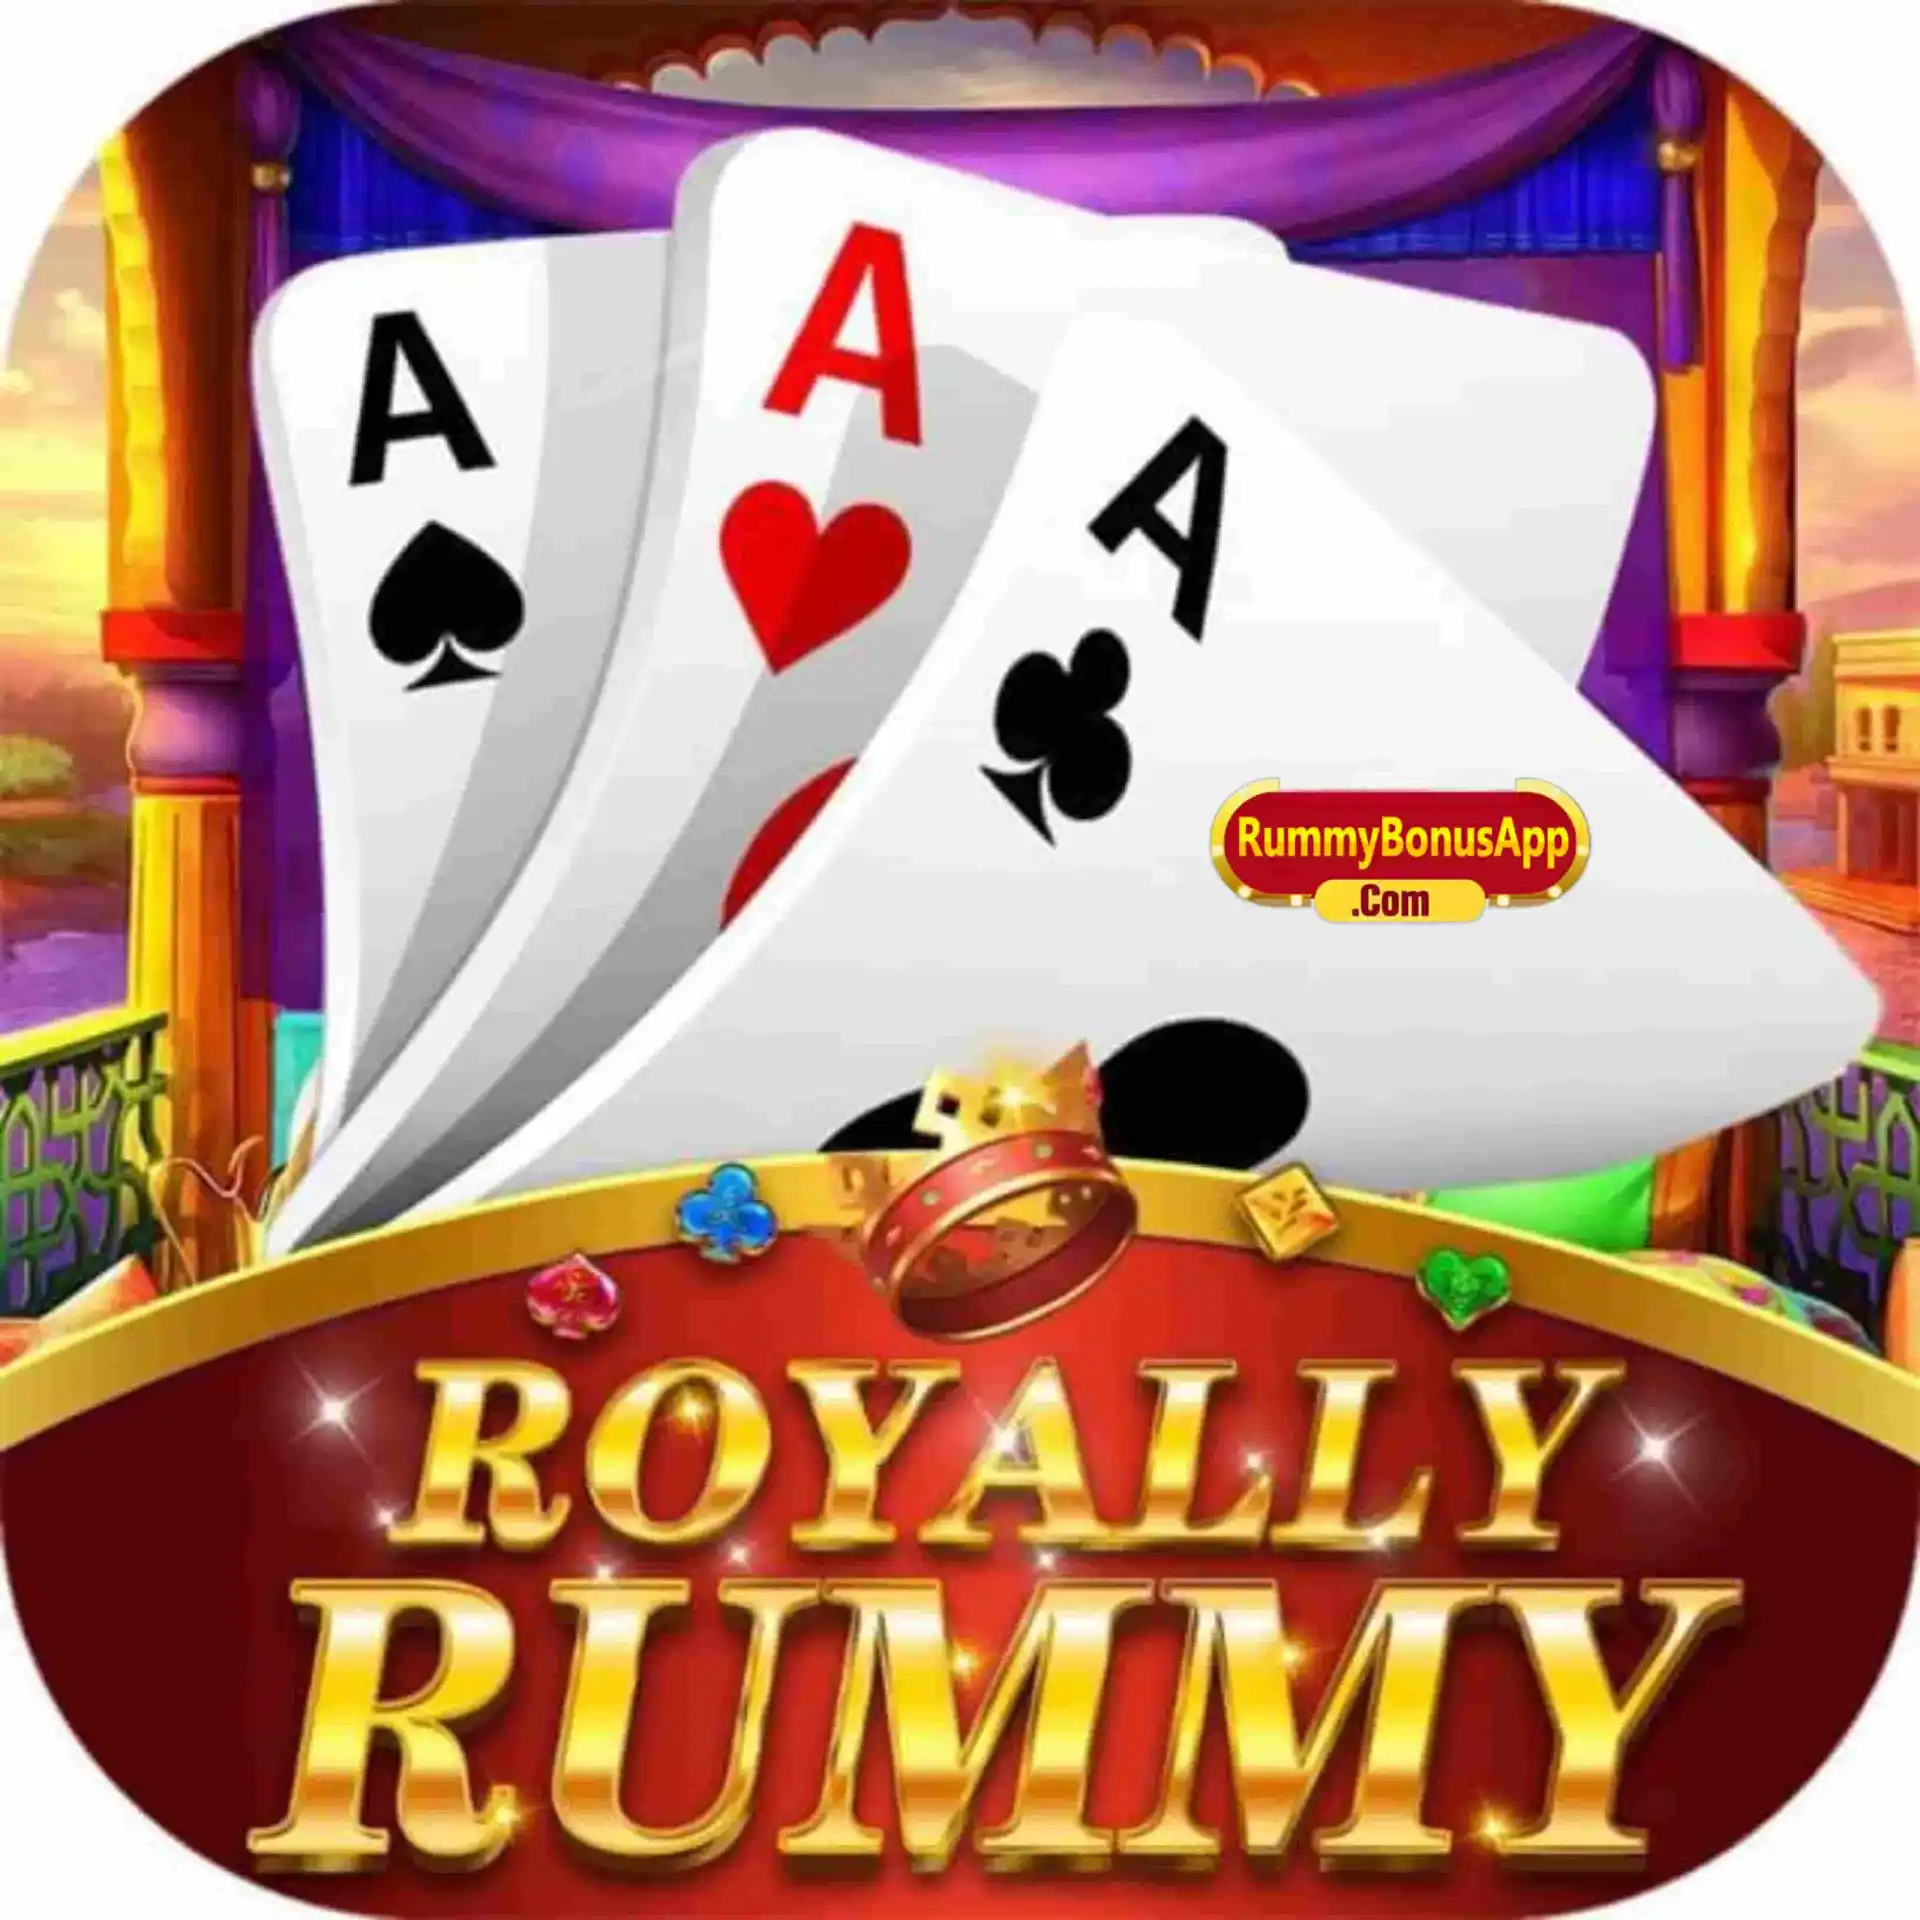 Royally Rummy - All Rummy App - All Rummy Apps - RummyBonusApp